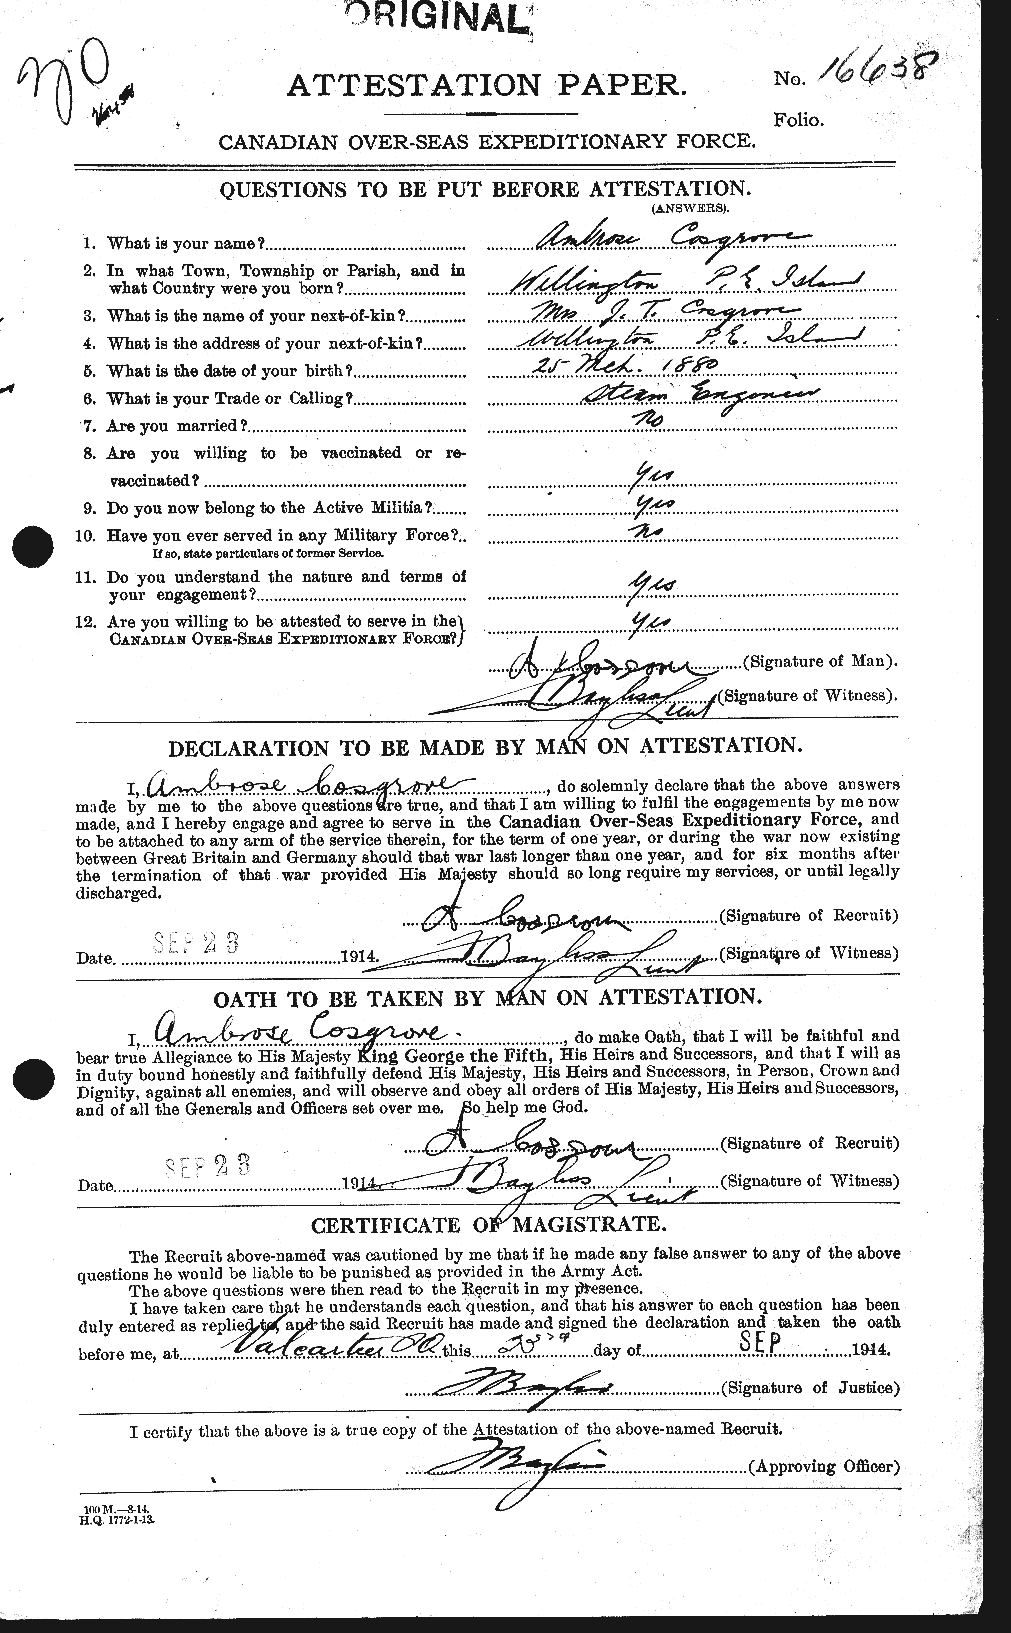 Dossiers du Personnel de la Première Guerre mondiale - CEC 057969a